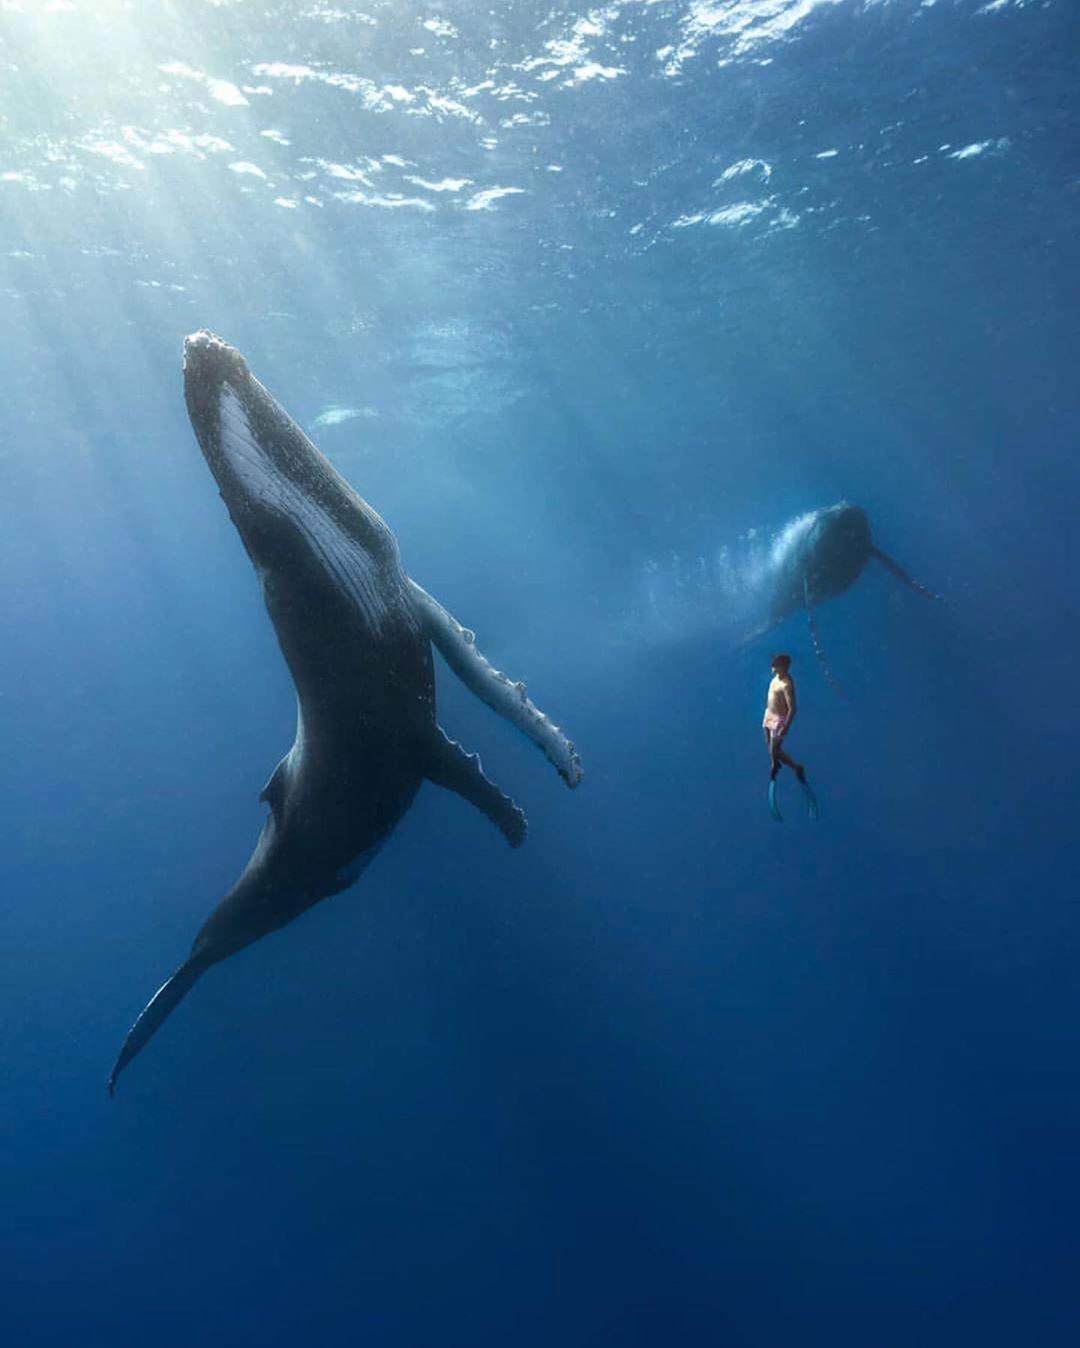  座头鲸与潜水者，来自摄影师Adam Stern。 